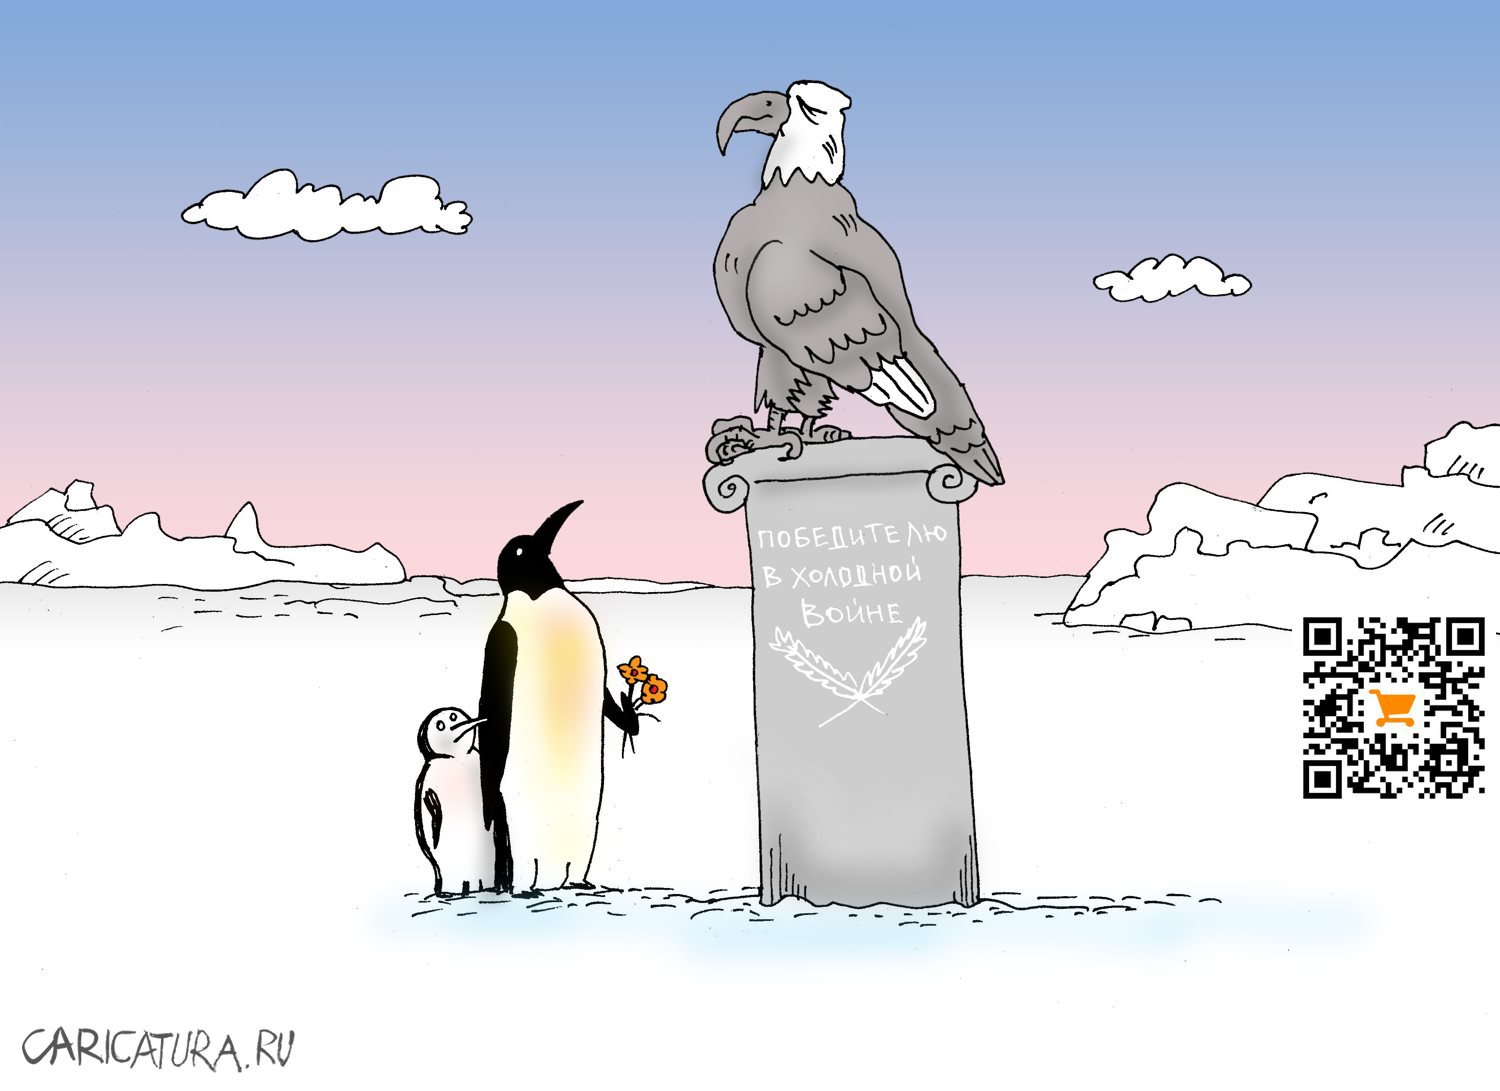 Карикатура "Мнимая победа", Валерий Тарасенко